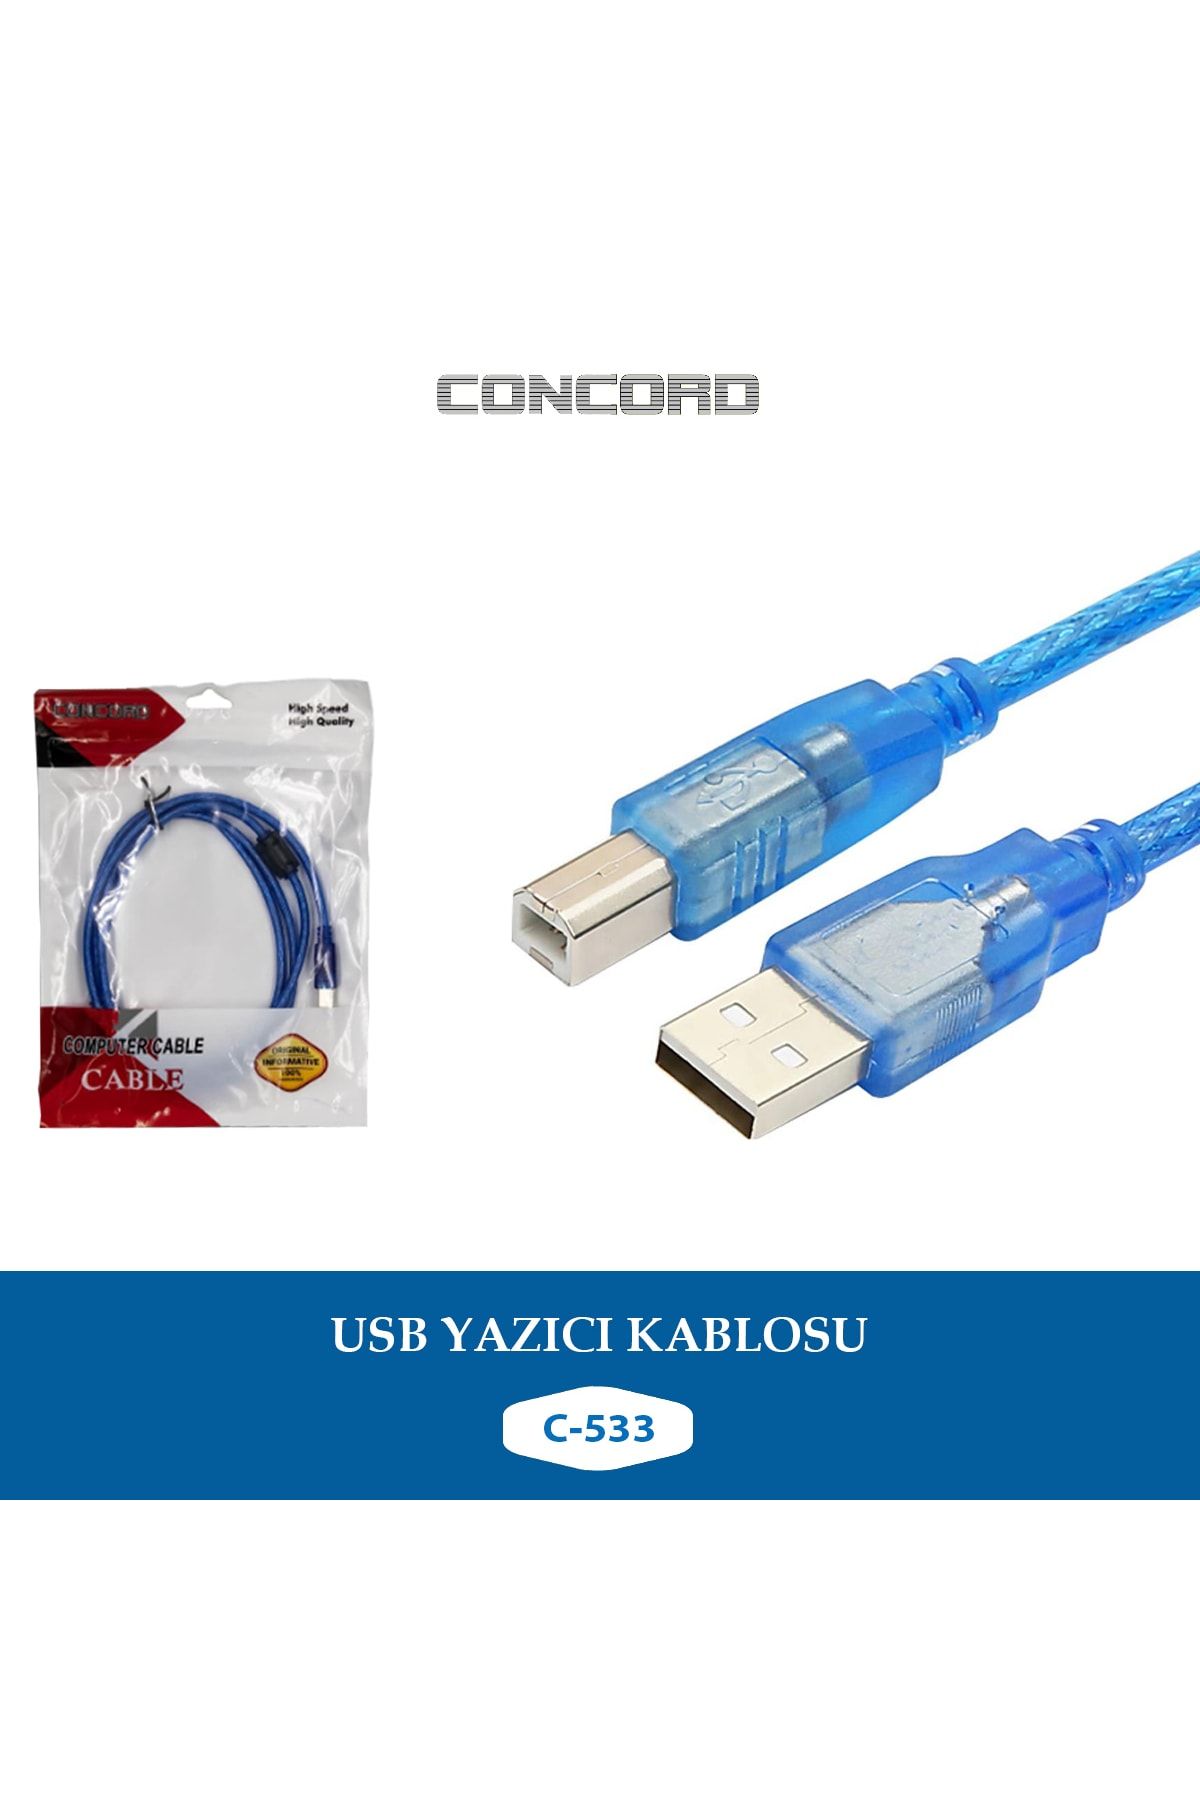 Concord C-533 Usb 2.0 Yazıcı Kablosu 3 Metre